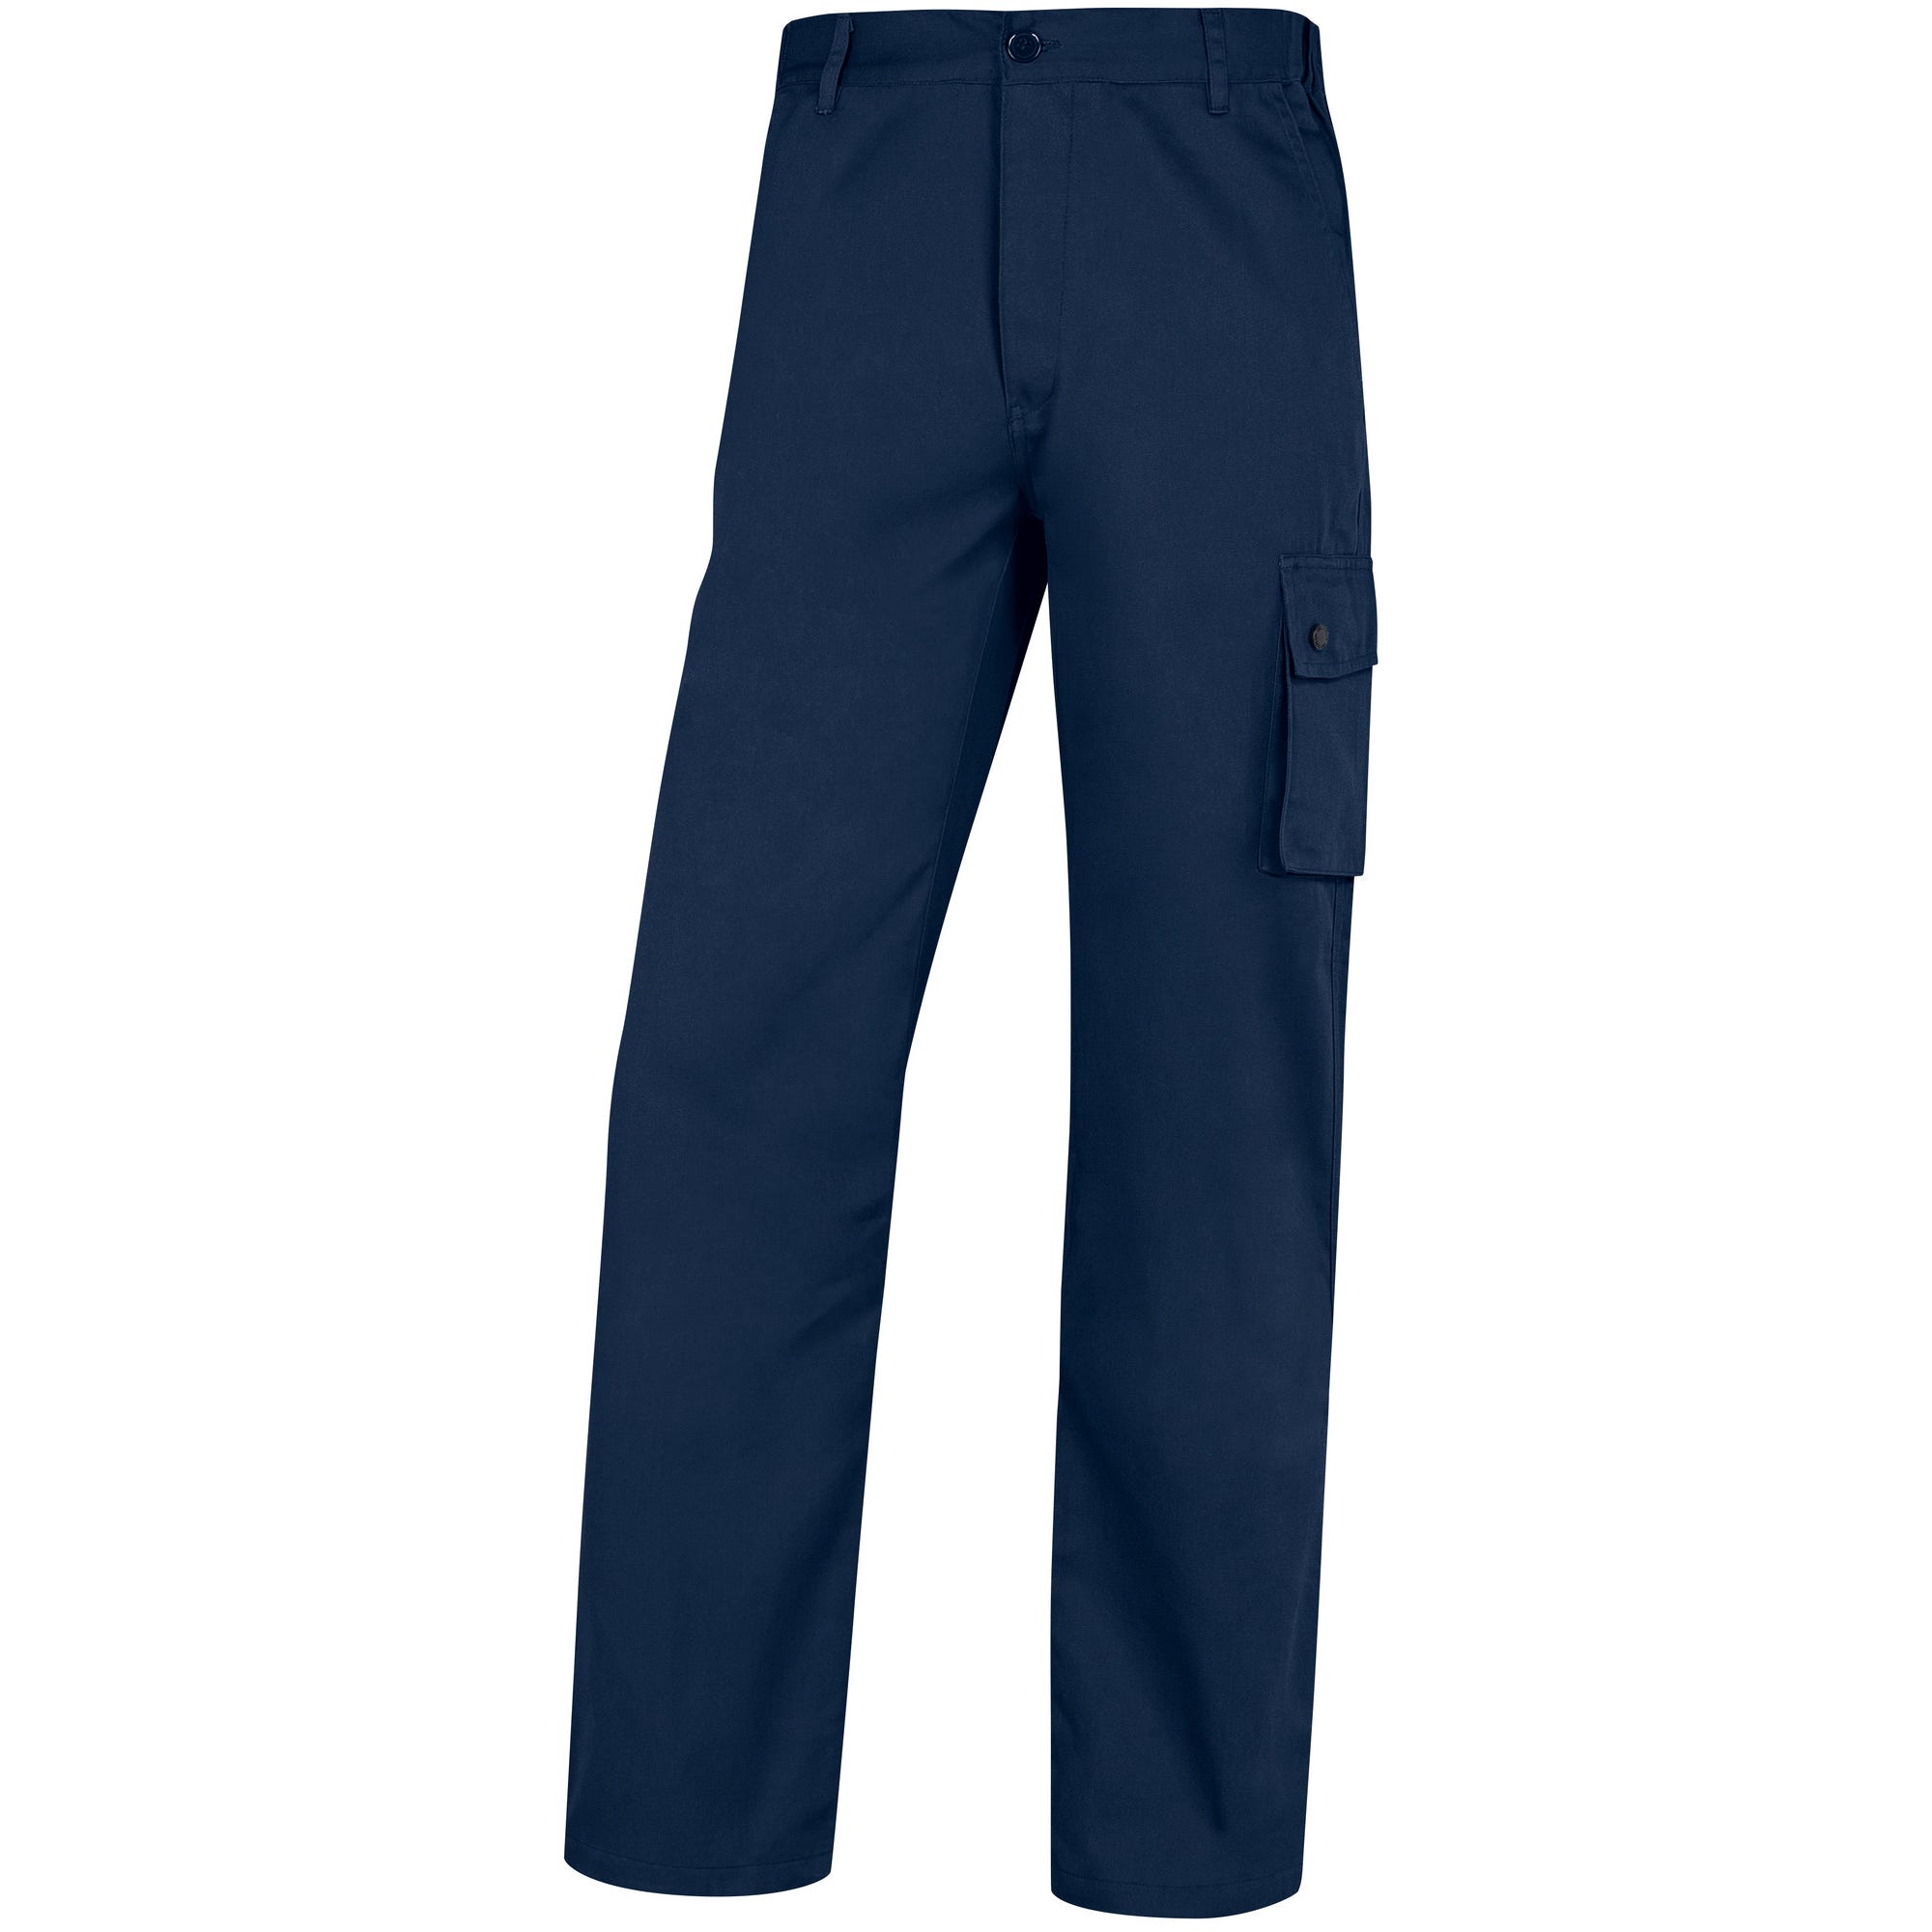 Pantalon de travail bleu marine T.XXXL Palaos light - DELTA PLUS 0